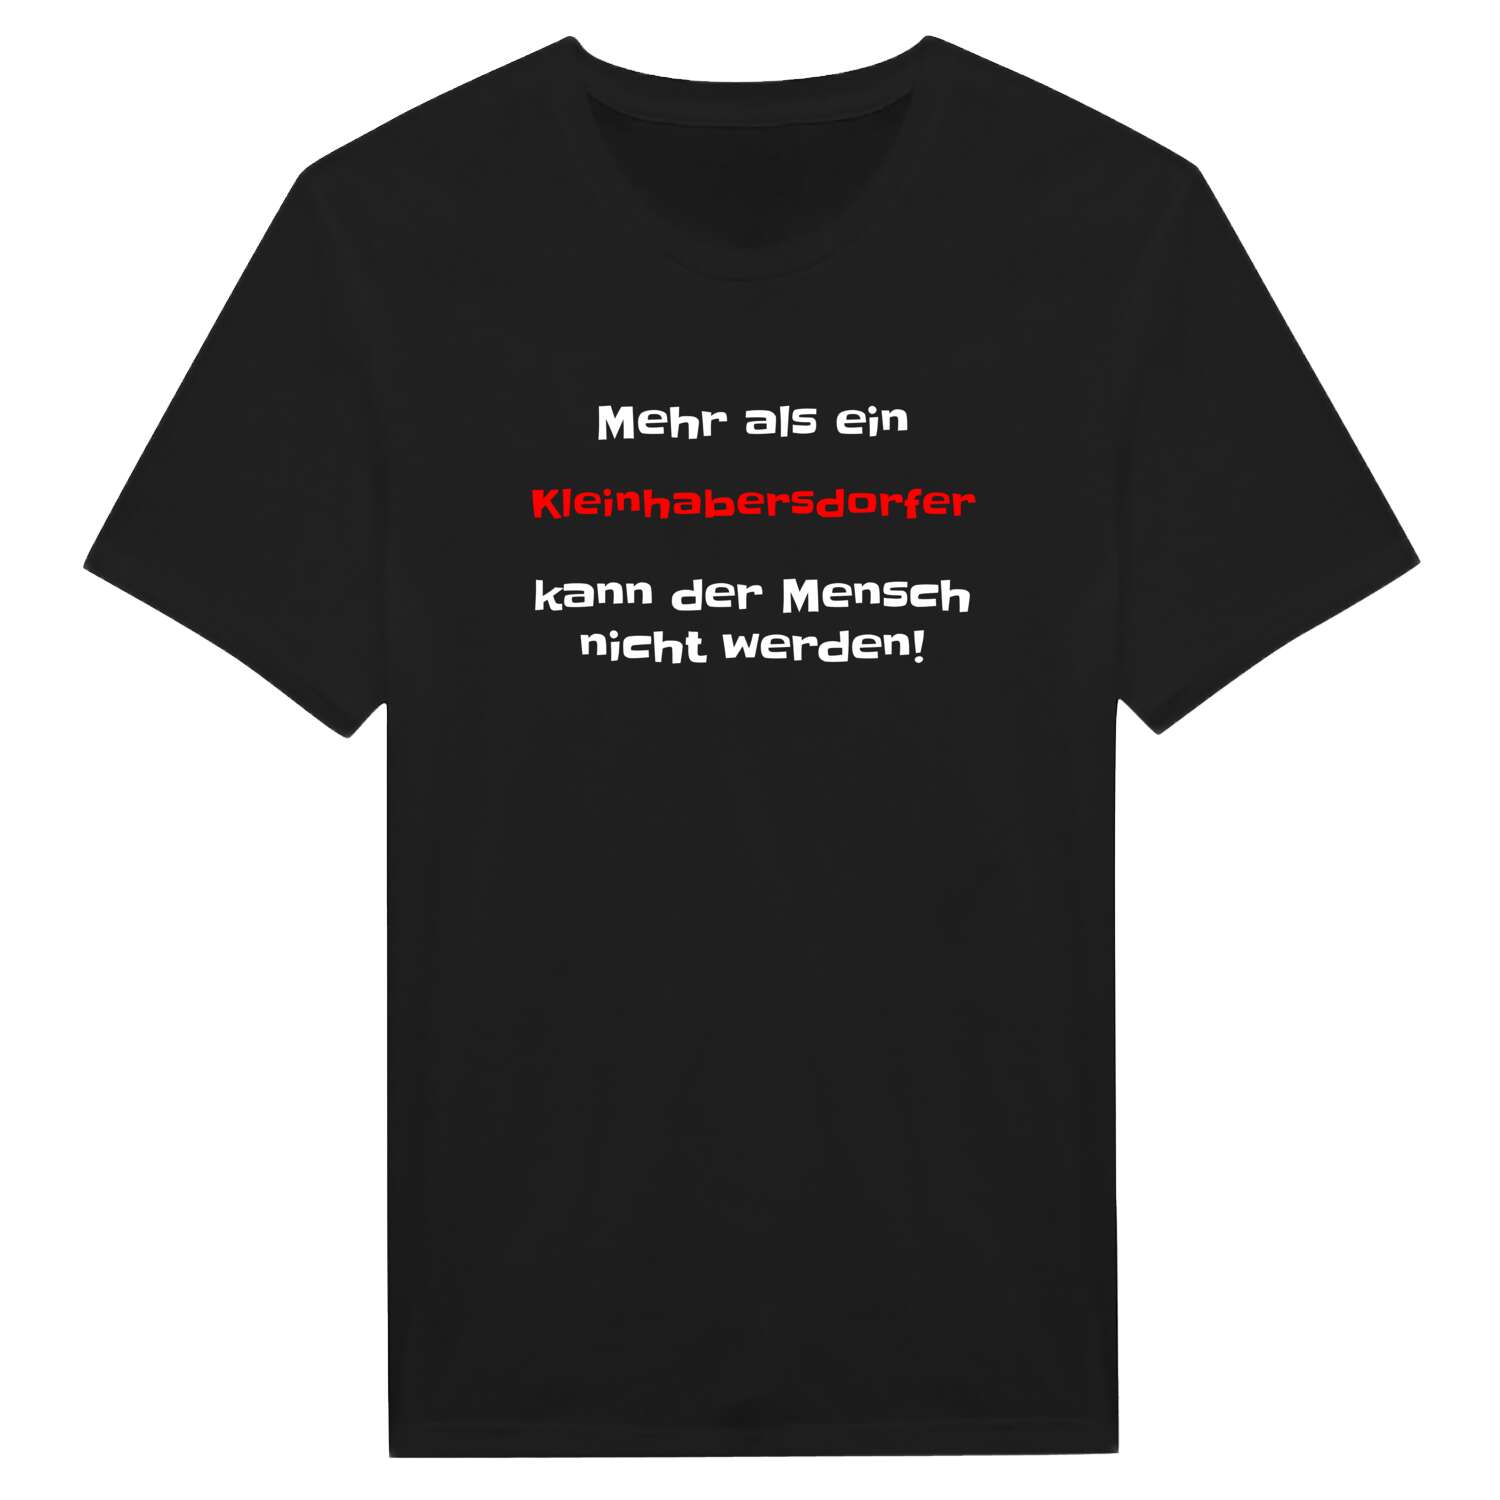 Kleinhabersdorf T-Shirt »Mehr als ein«